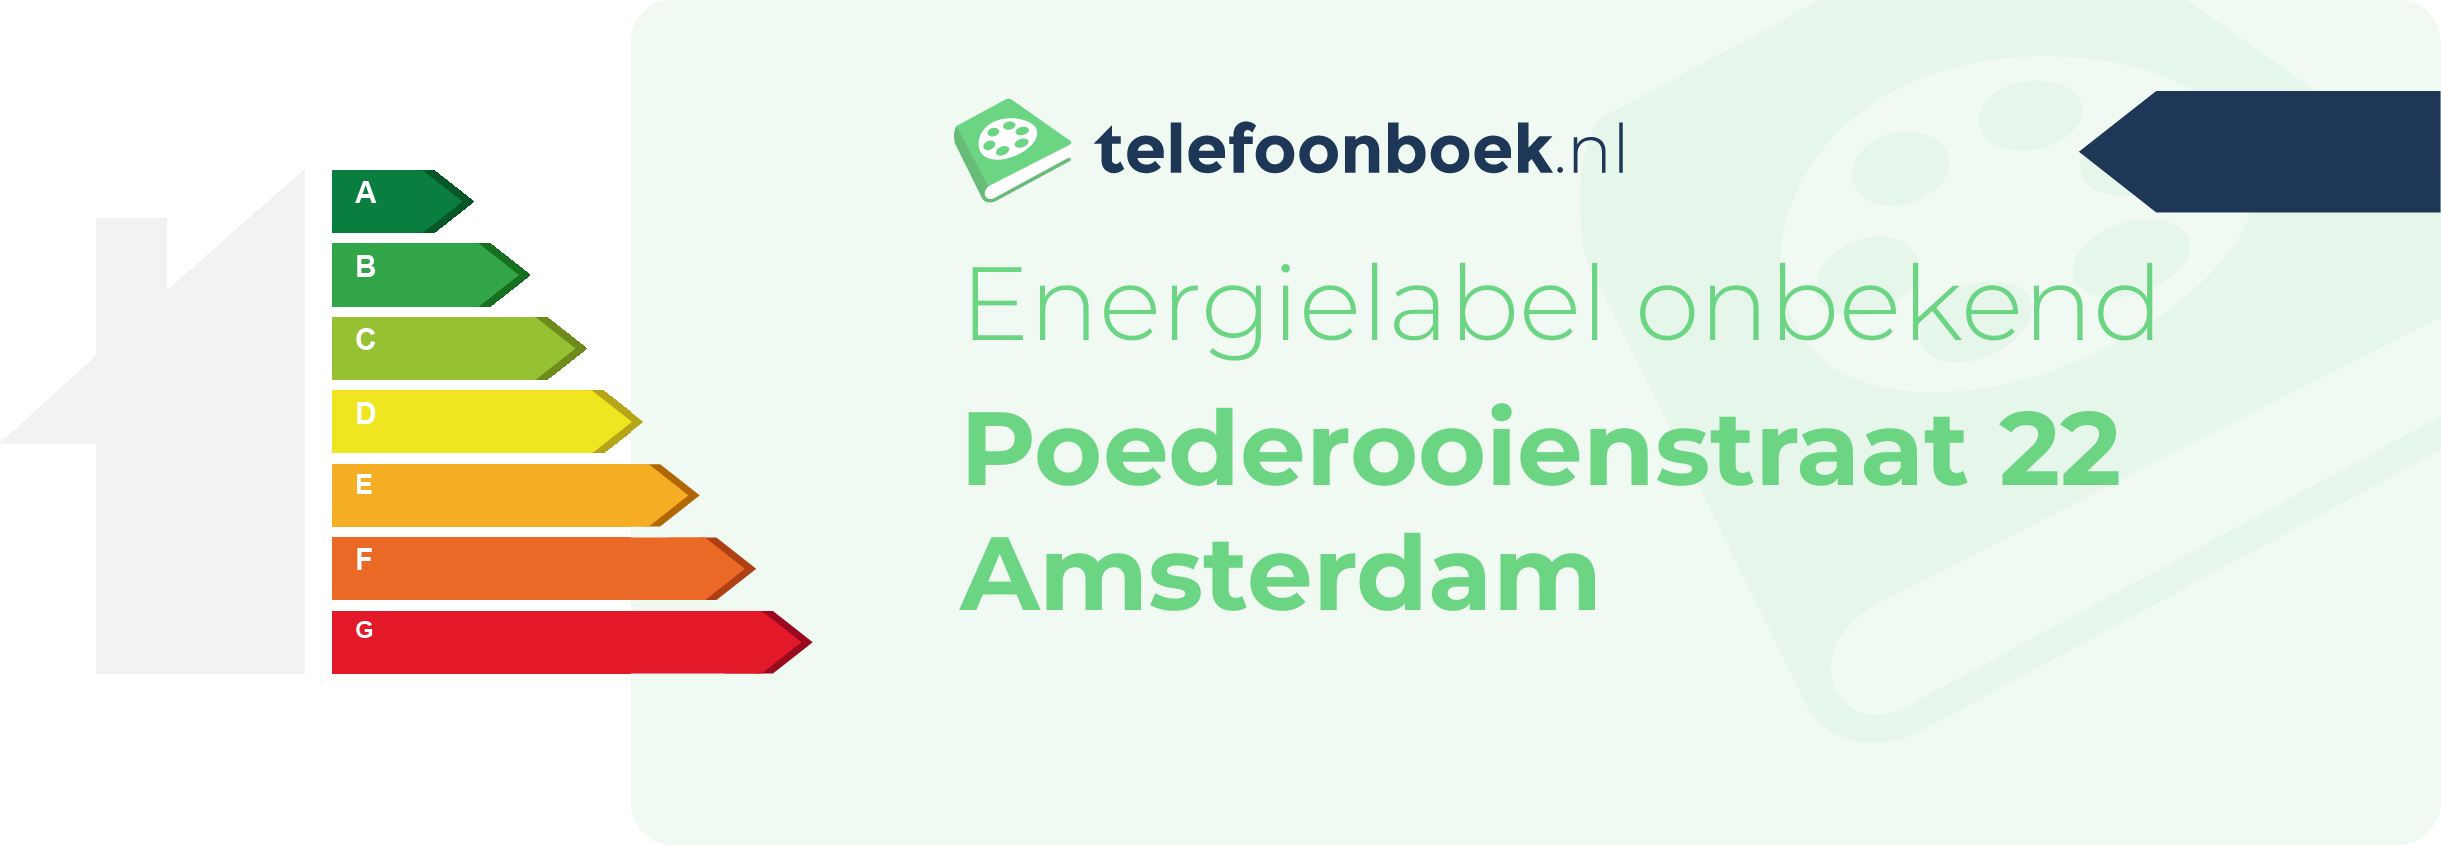 Energielabel Poederooienstraat 22 Amsterdam